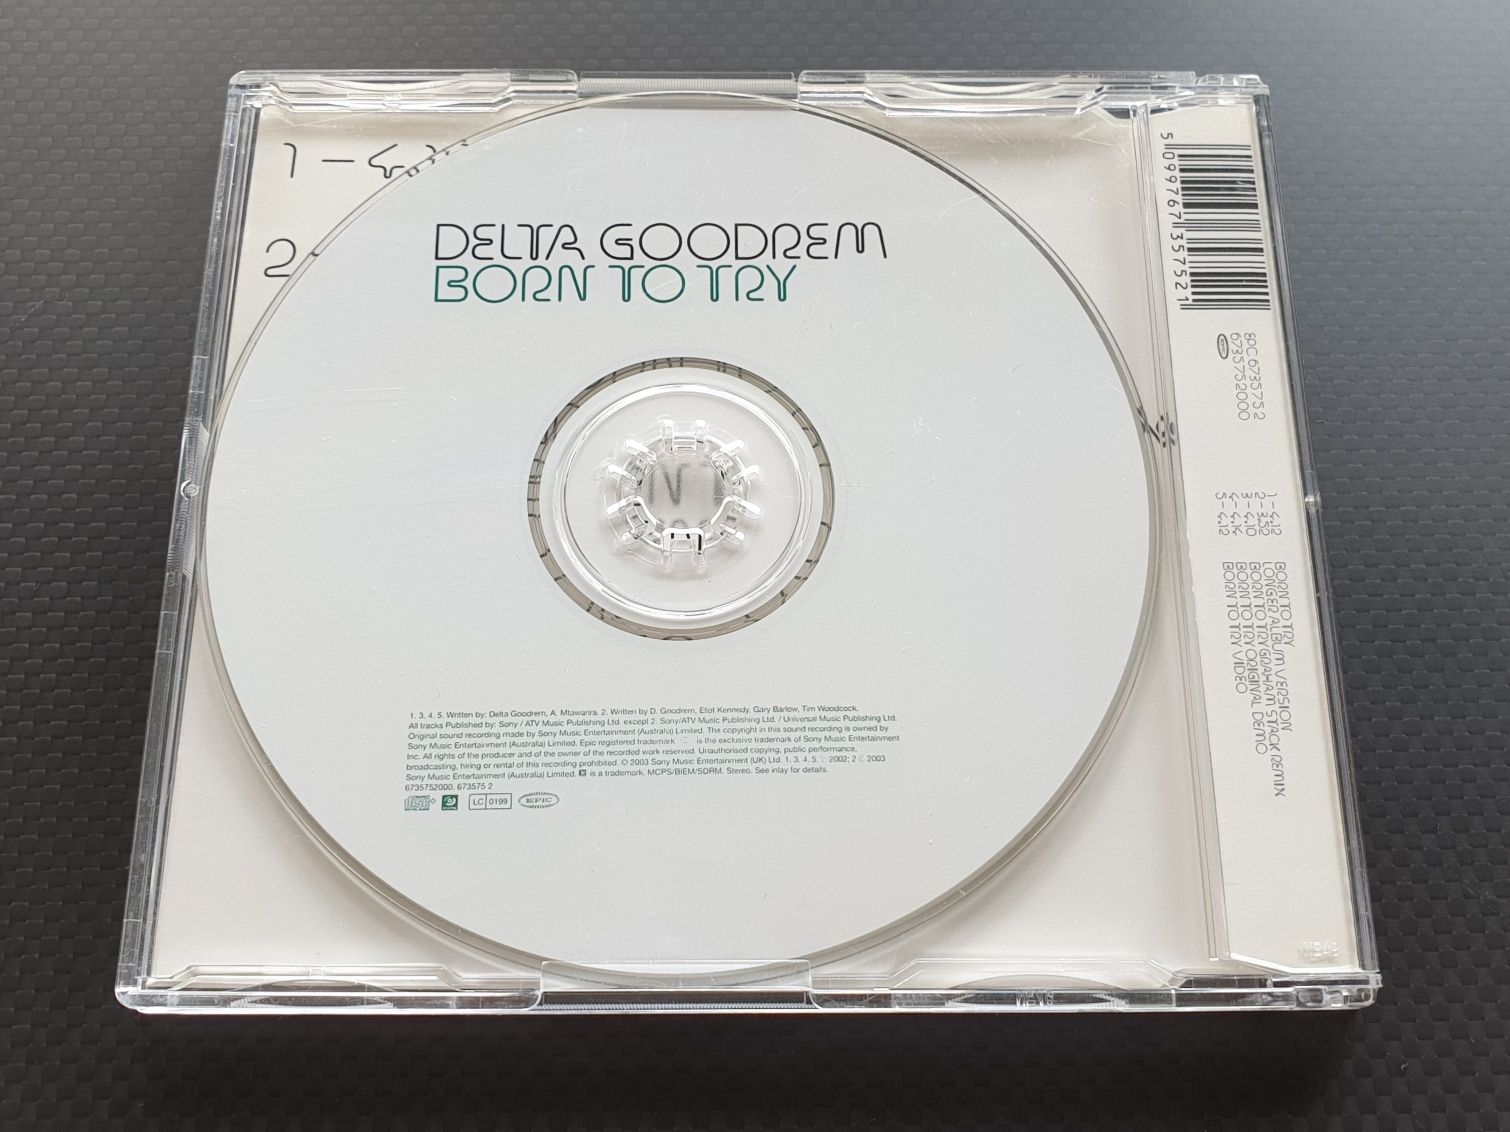 Delta Goodrem - Born to Try - CDM - Mint